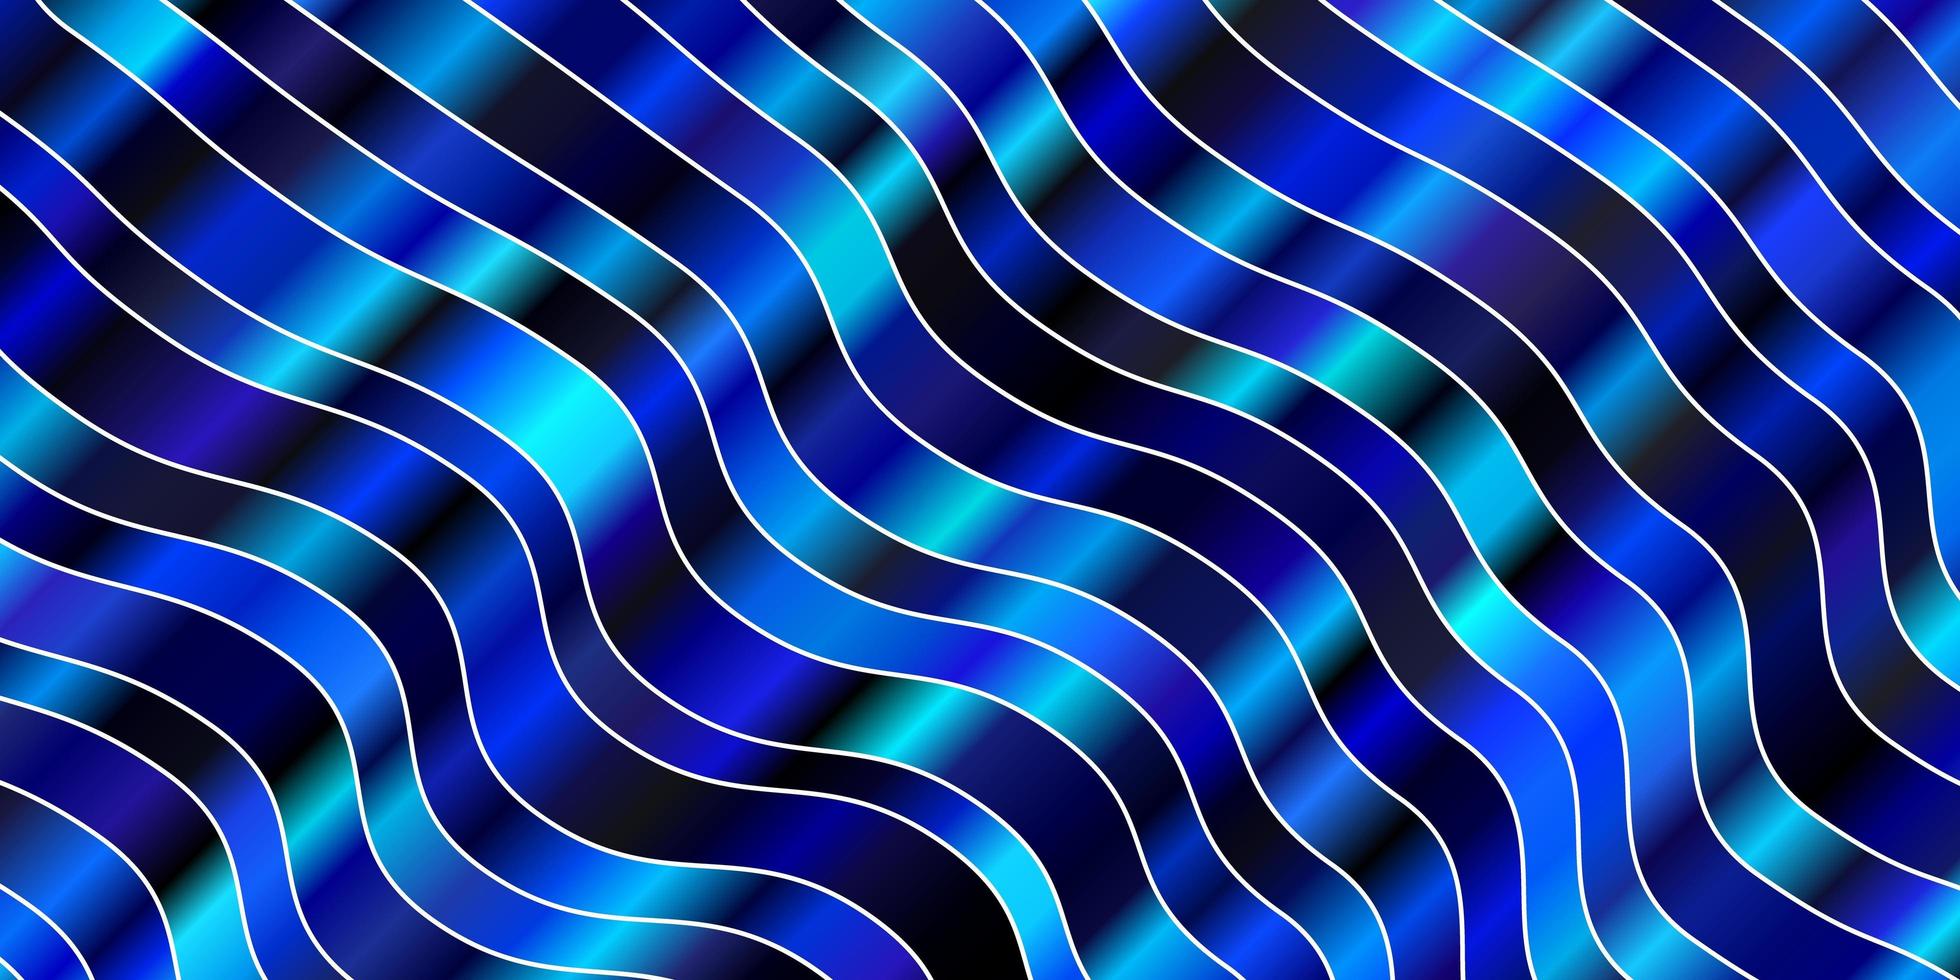 fond bleu foncé avec des lignes courbes. vecteur